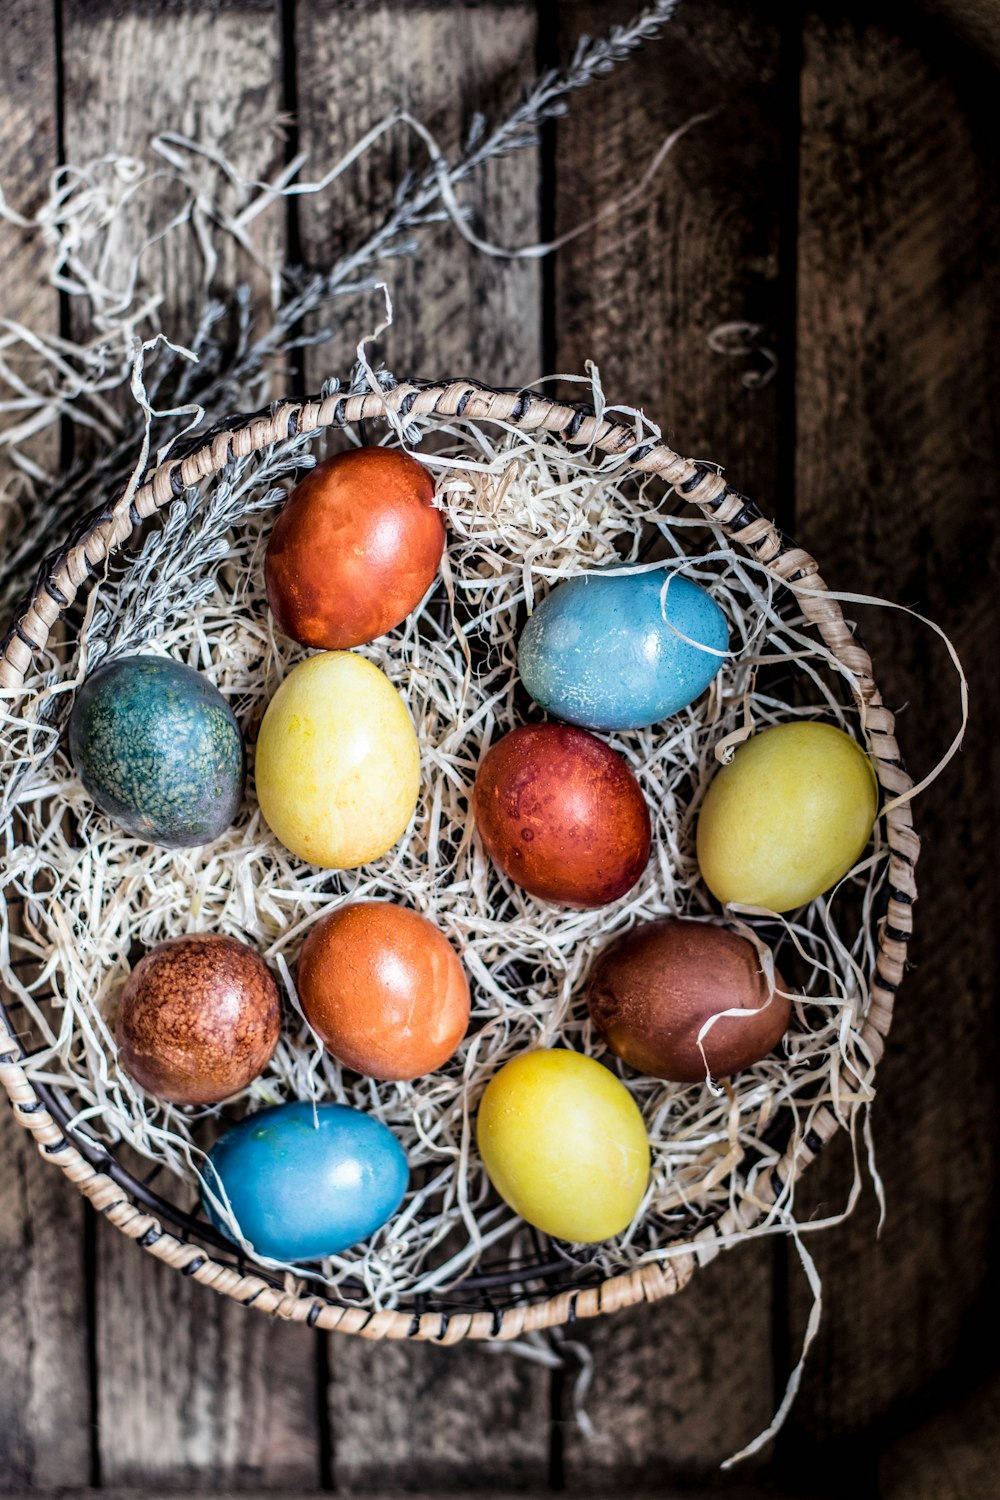 모듬 색깔의 달걀